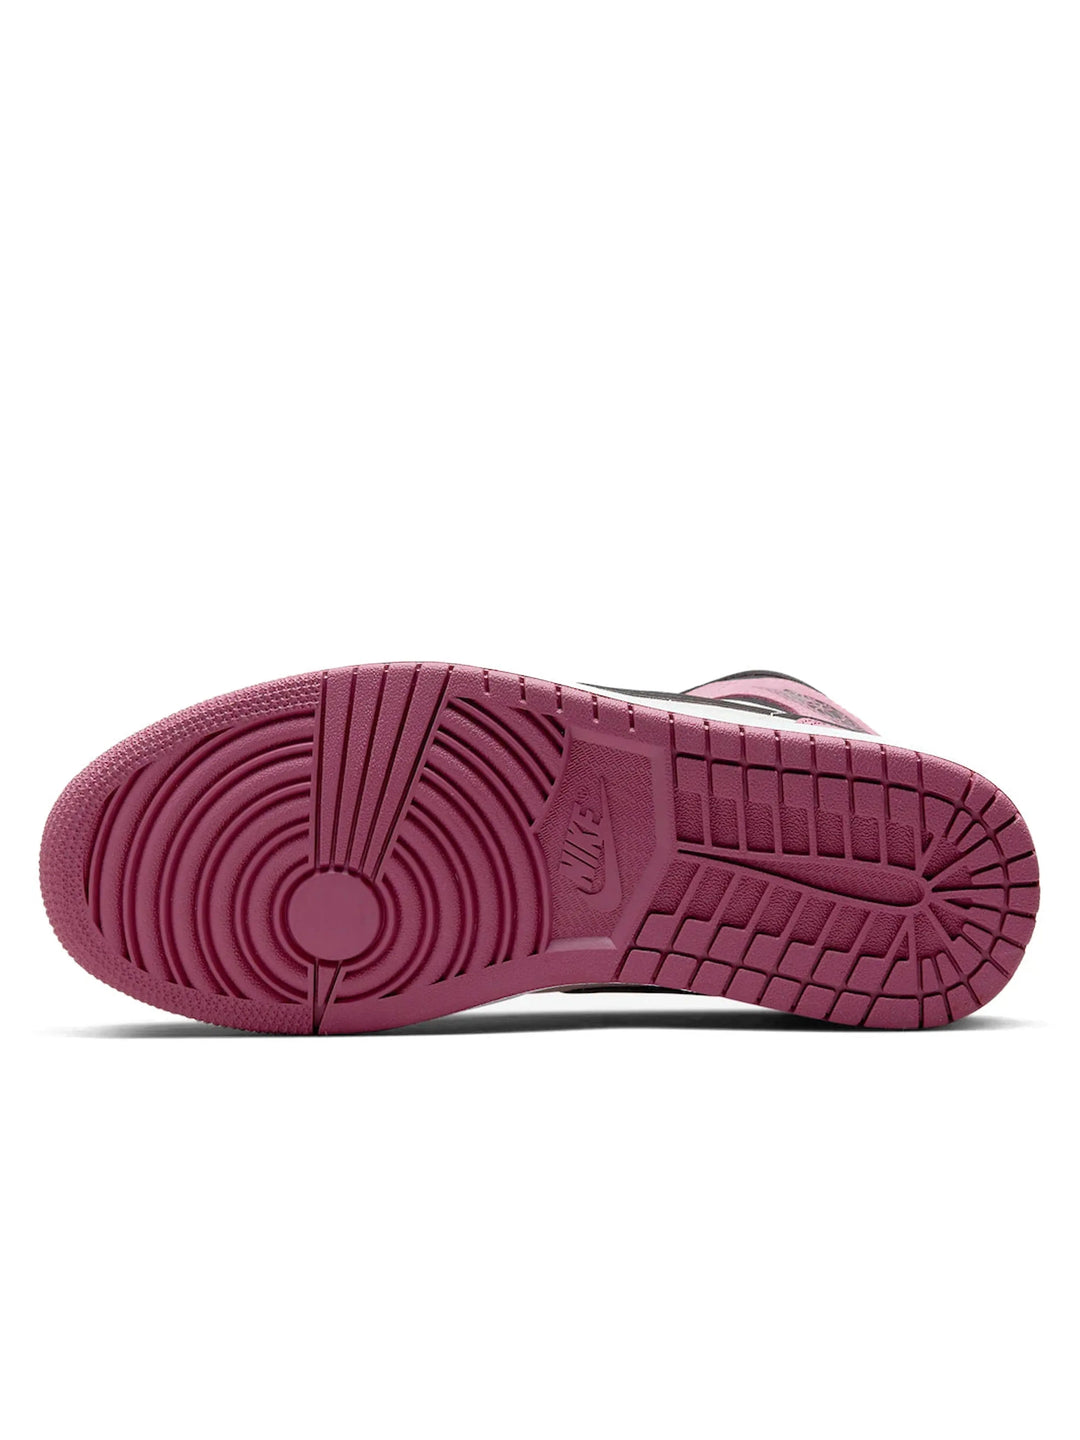 Nike Air Jordan 1 Mid Berry Pink (W) Prior